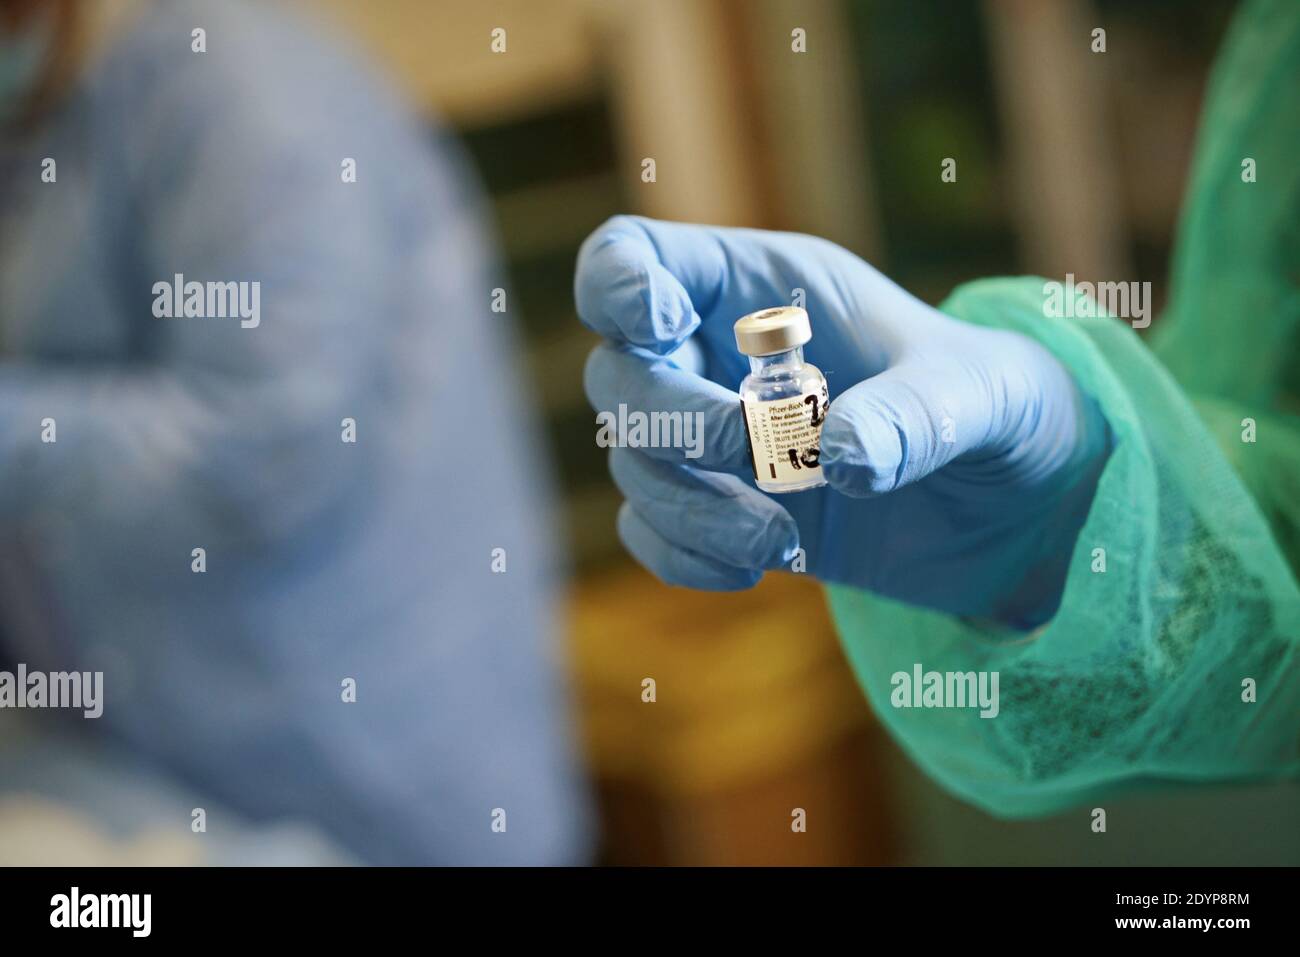 Gros plan du vaccin contre le coronavirus de Pfizer, à l'hôpital Amedeo di Savoia. Turin, Italie - 27 décembre 2020 Banque D'Images